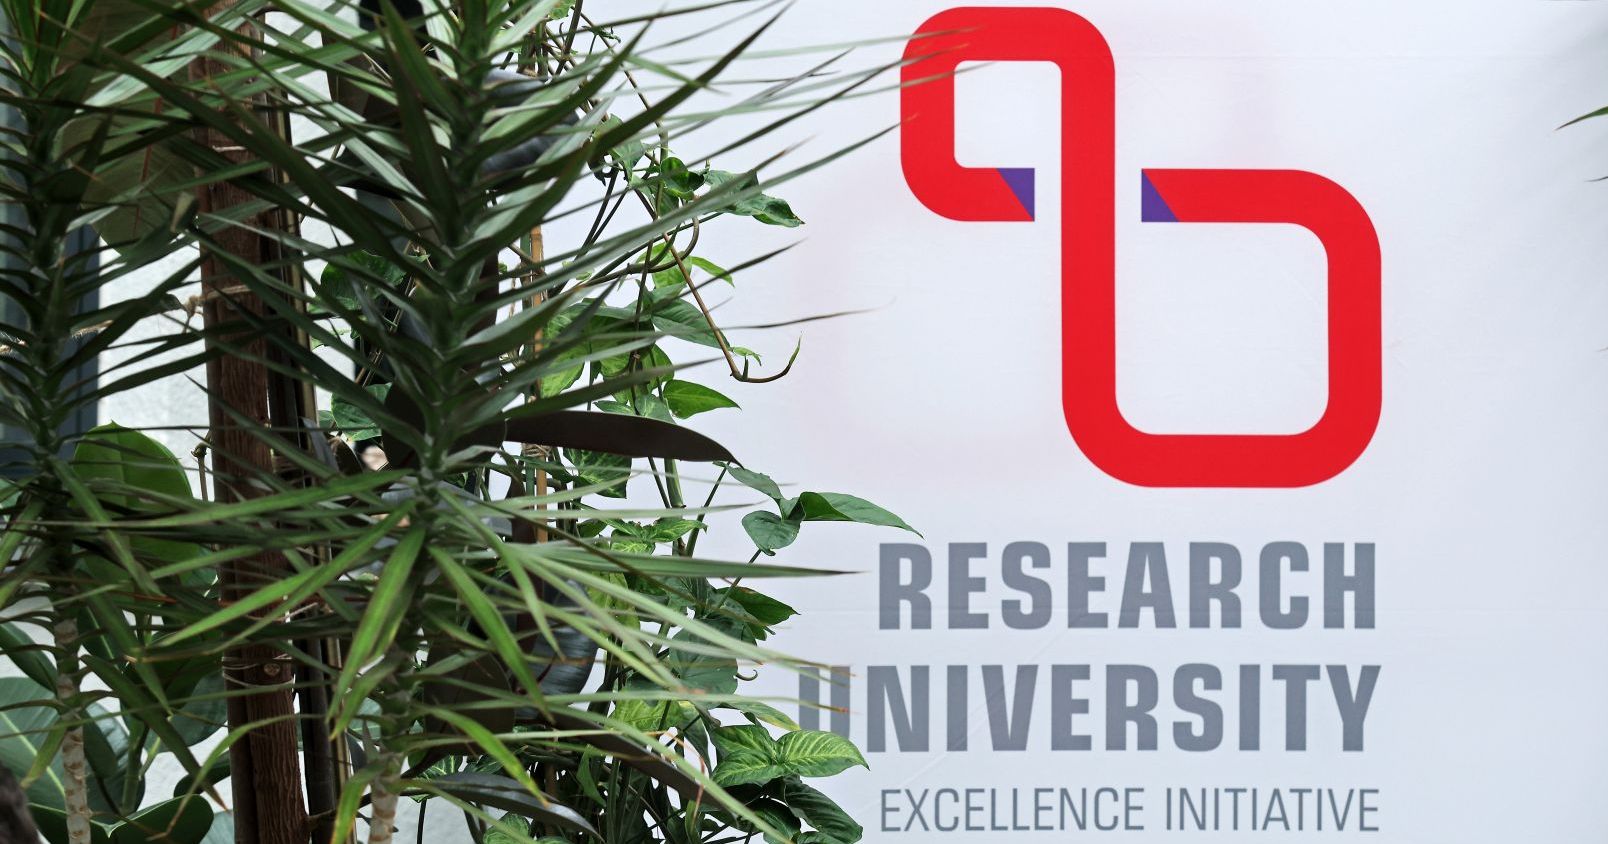 Stypendia na podniesienie jakości rozprawy doktorskiej to jedna z inicjatyw finansowanych z programu IDUB Logo IDUB Inicjatywa doskonałości - uczelnia badawcza